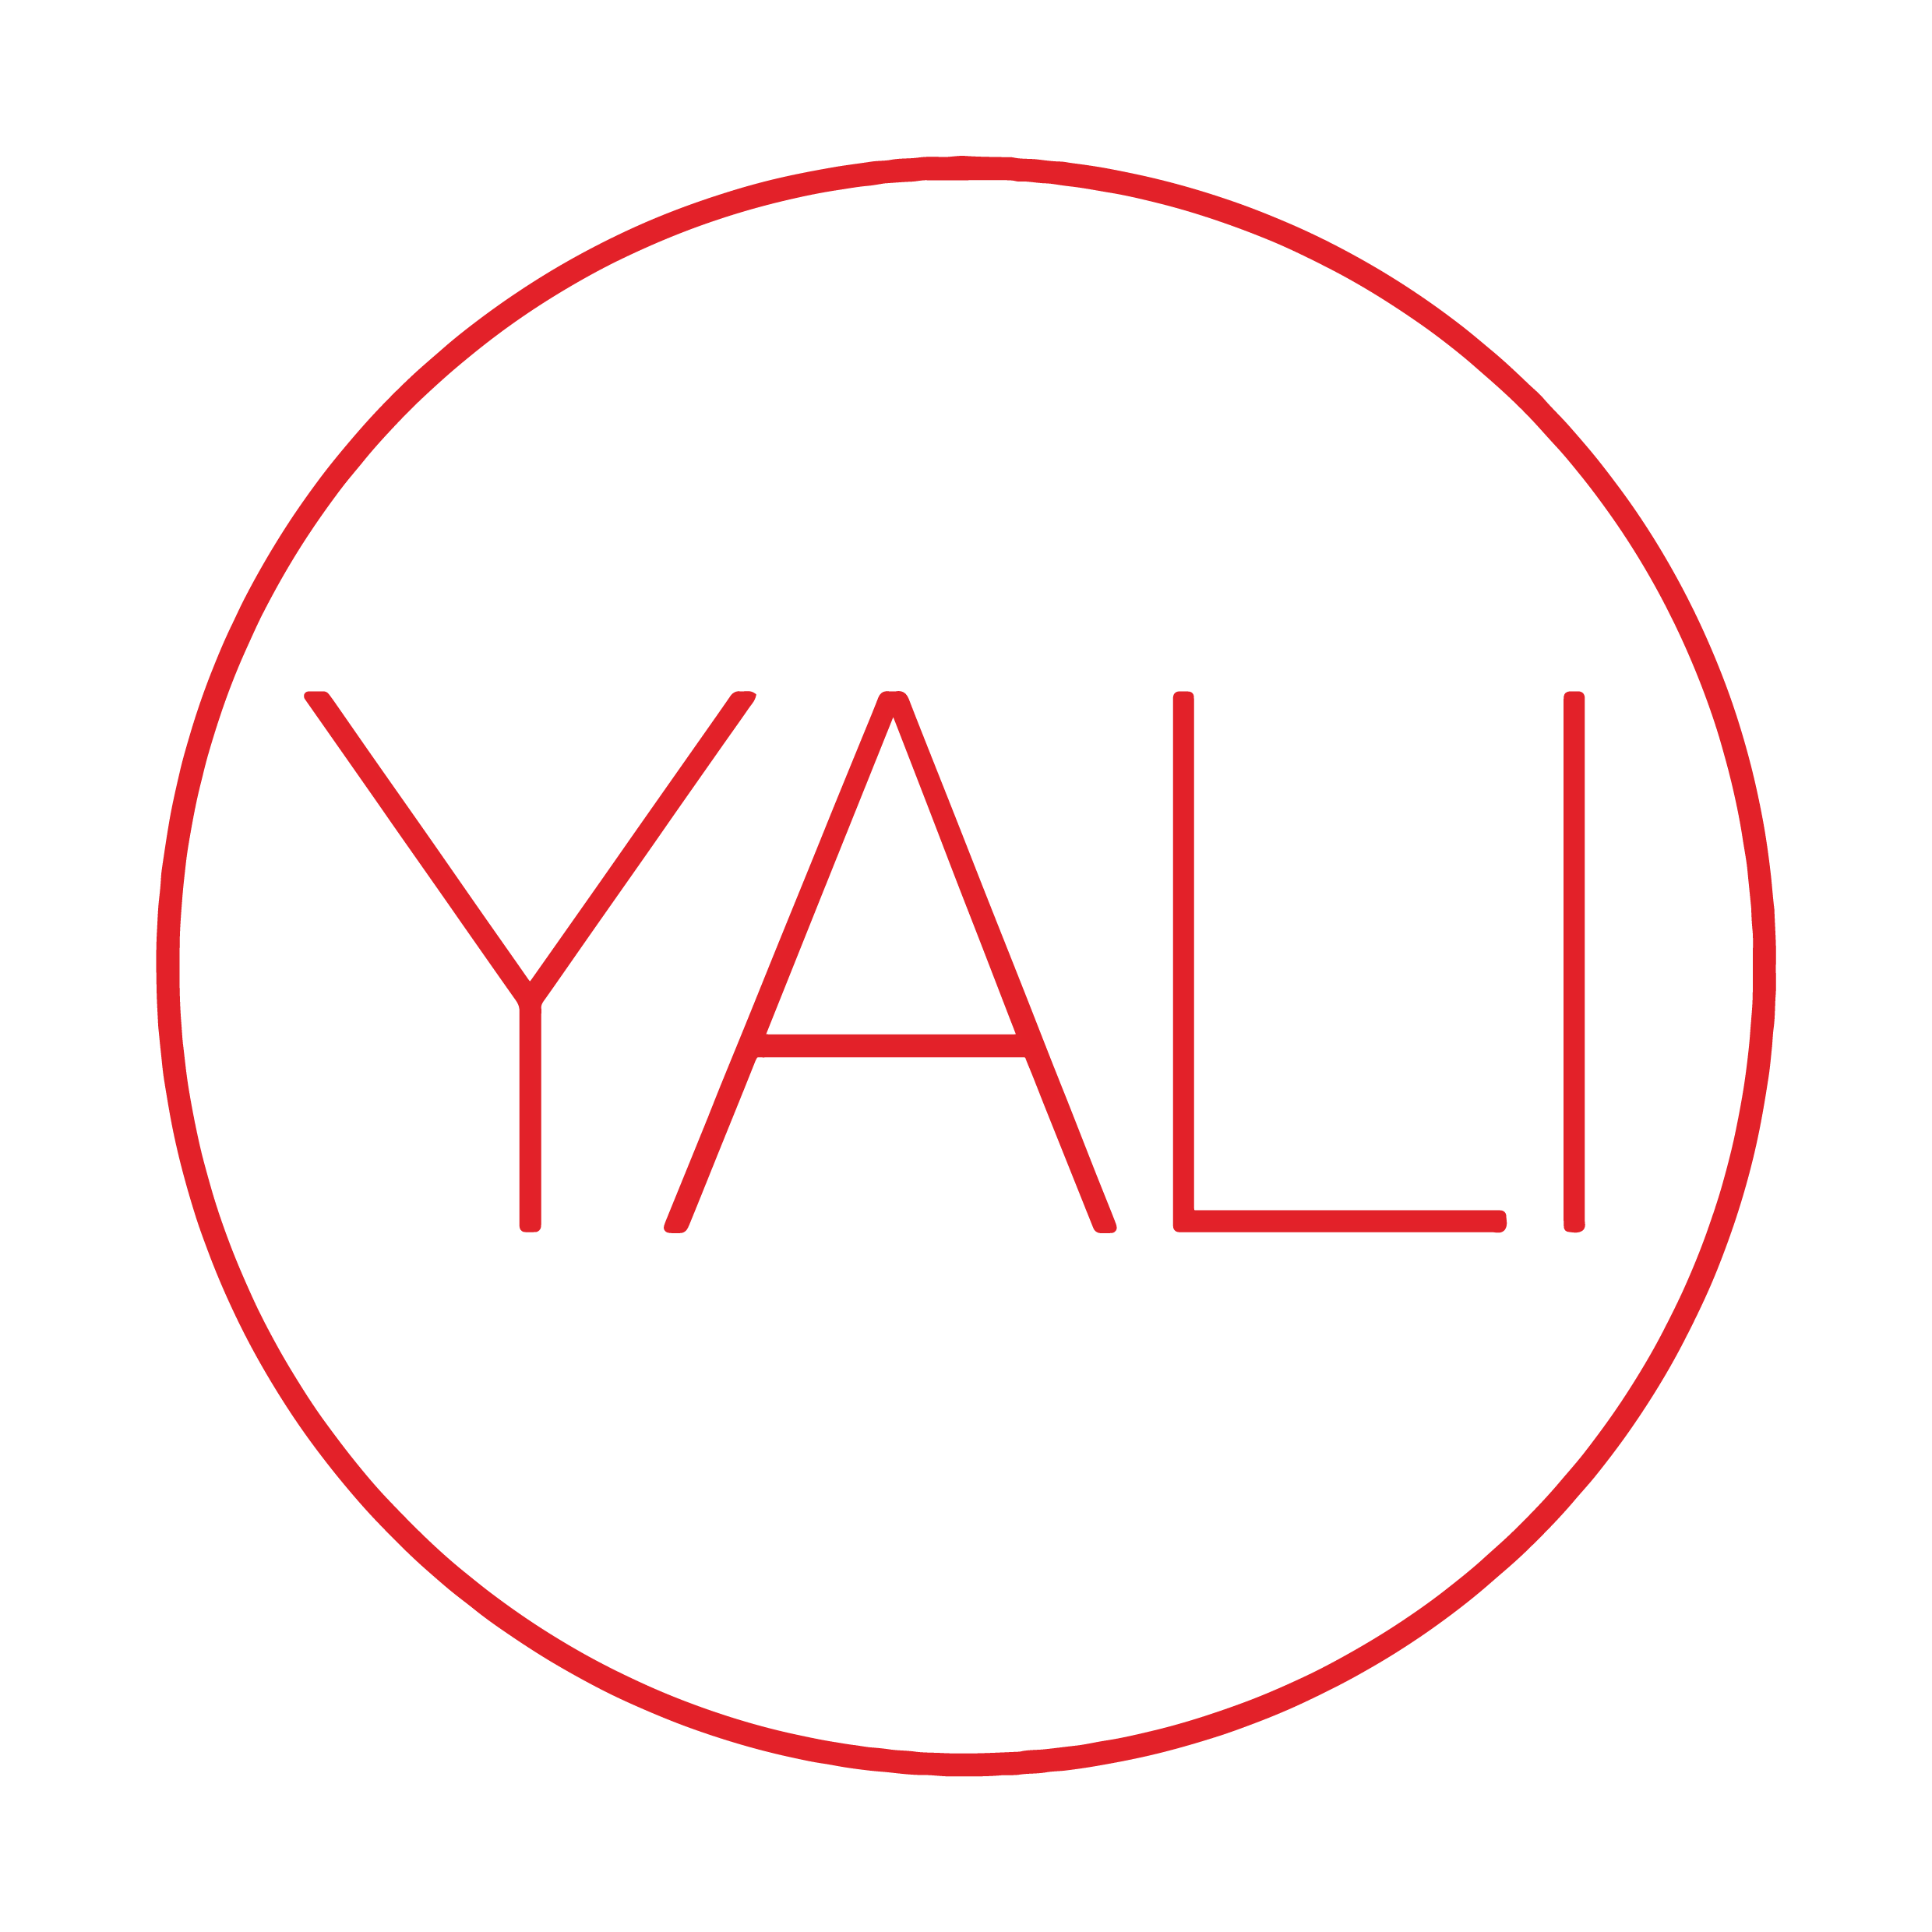 Share 58+ yali logo latest - ceg.edu.vn